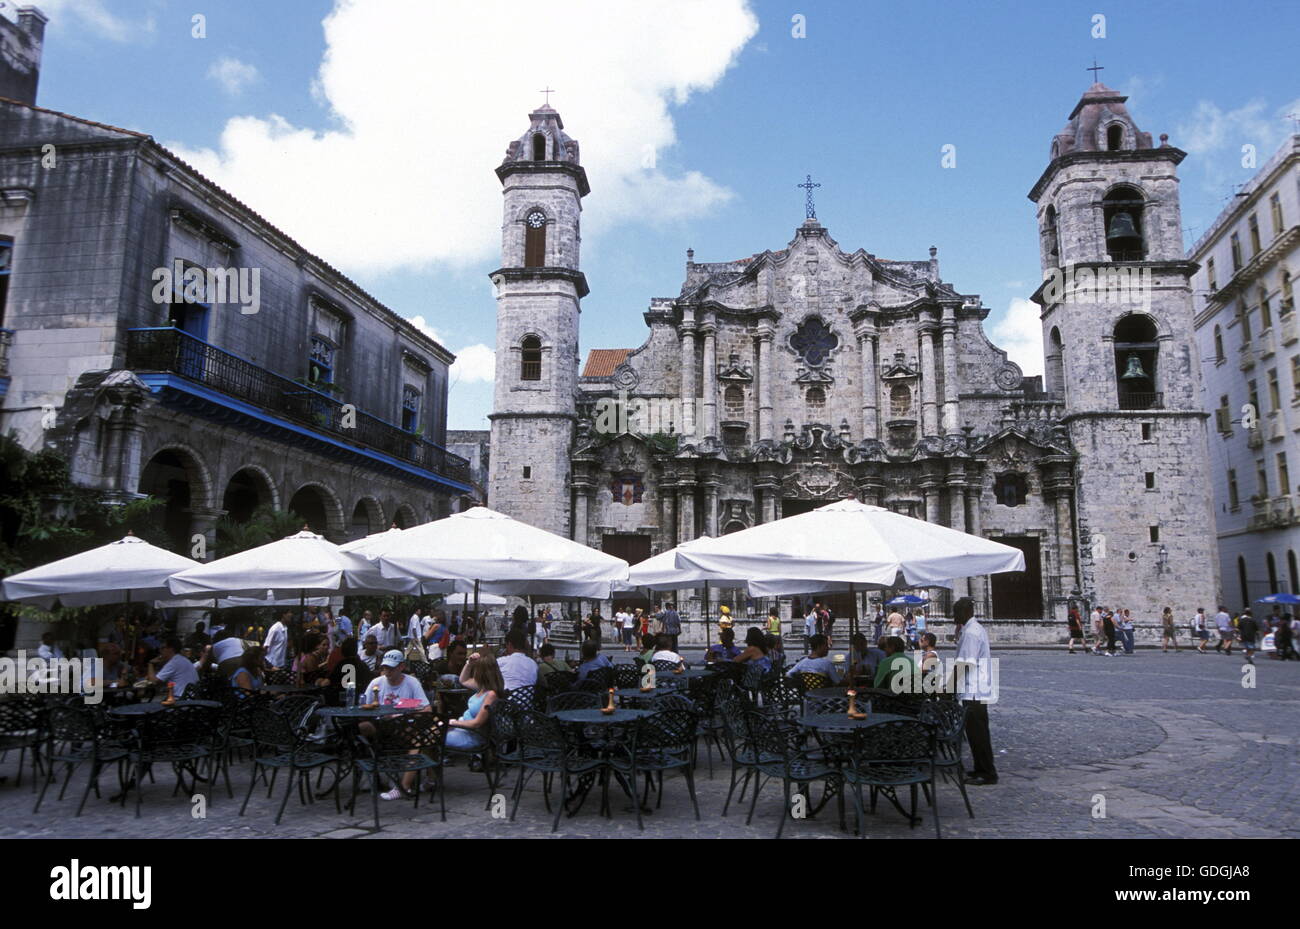 La Plaza de la Catedral, dans la vieille ville de la ville de La Havane à Cuba dans la mer des Caraïbes. Banque D'Images